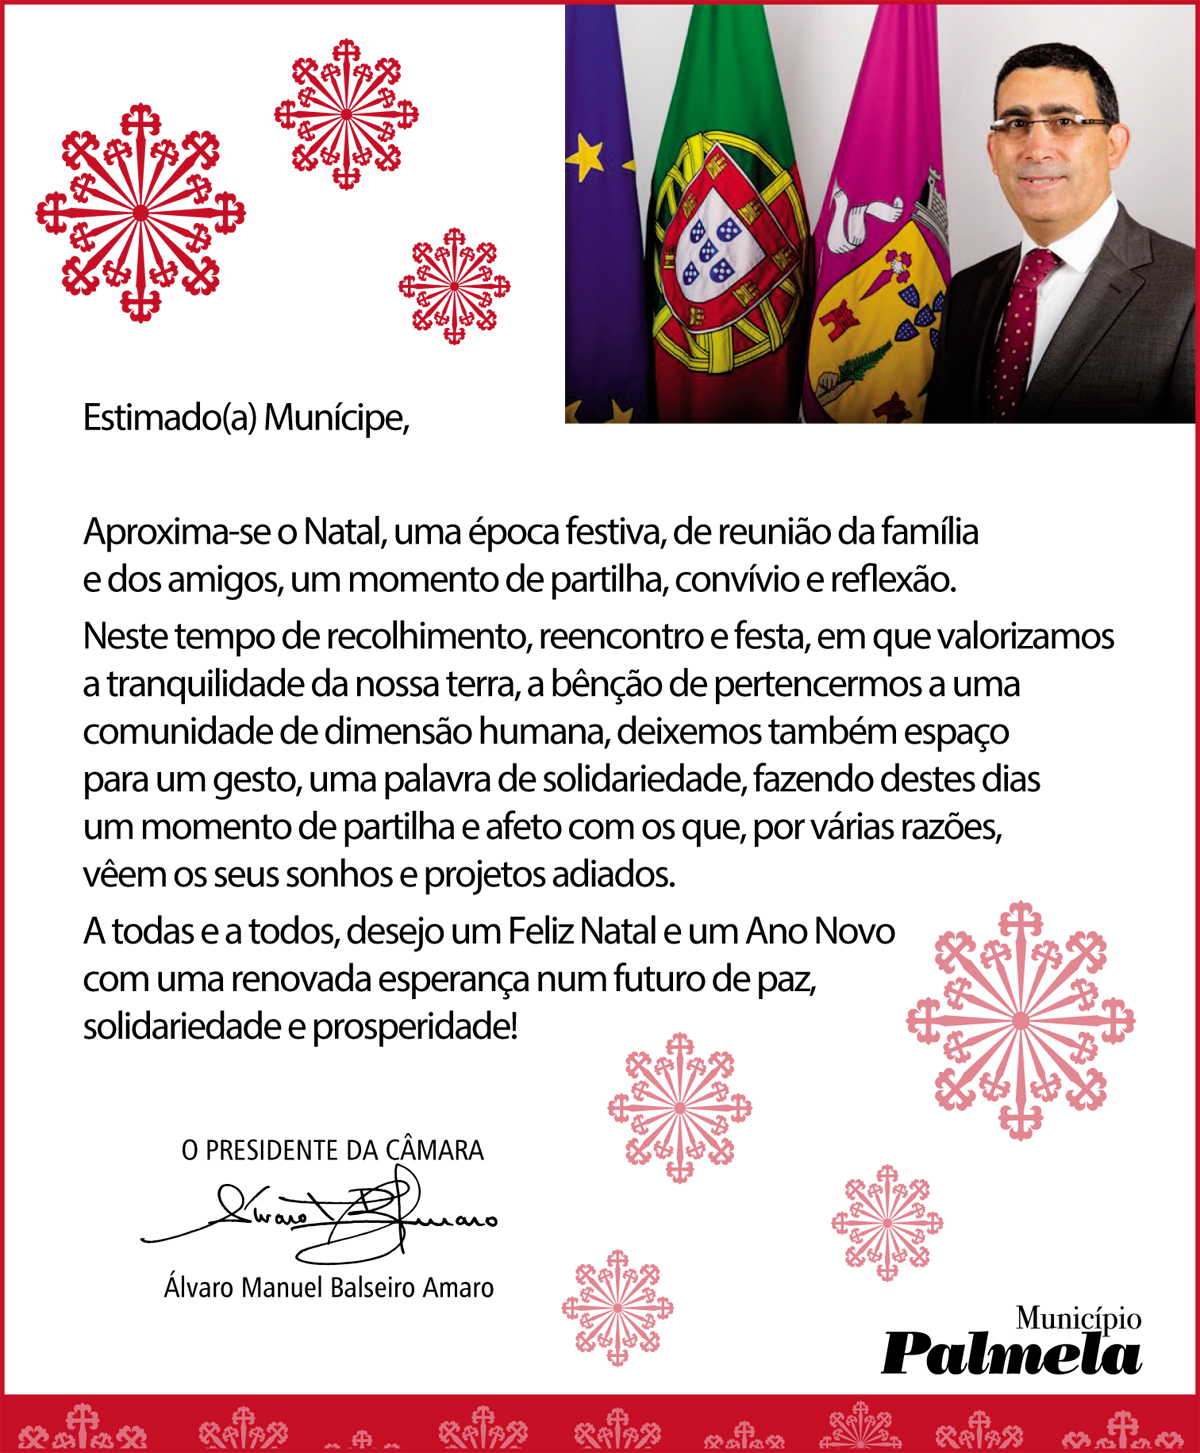 Mensagem de Boas Festas do Presidente da Câmara Municipal de Palmela